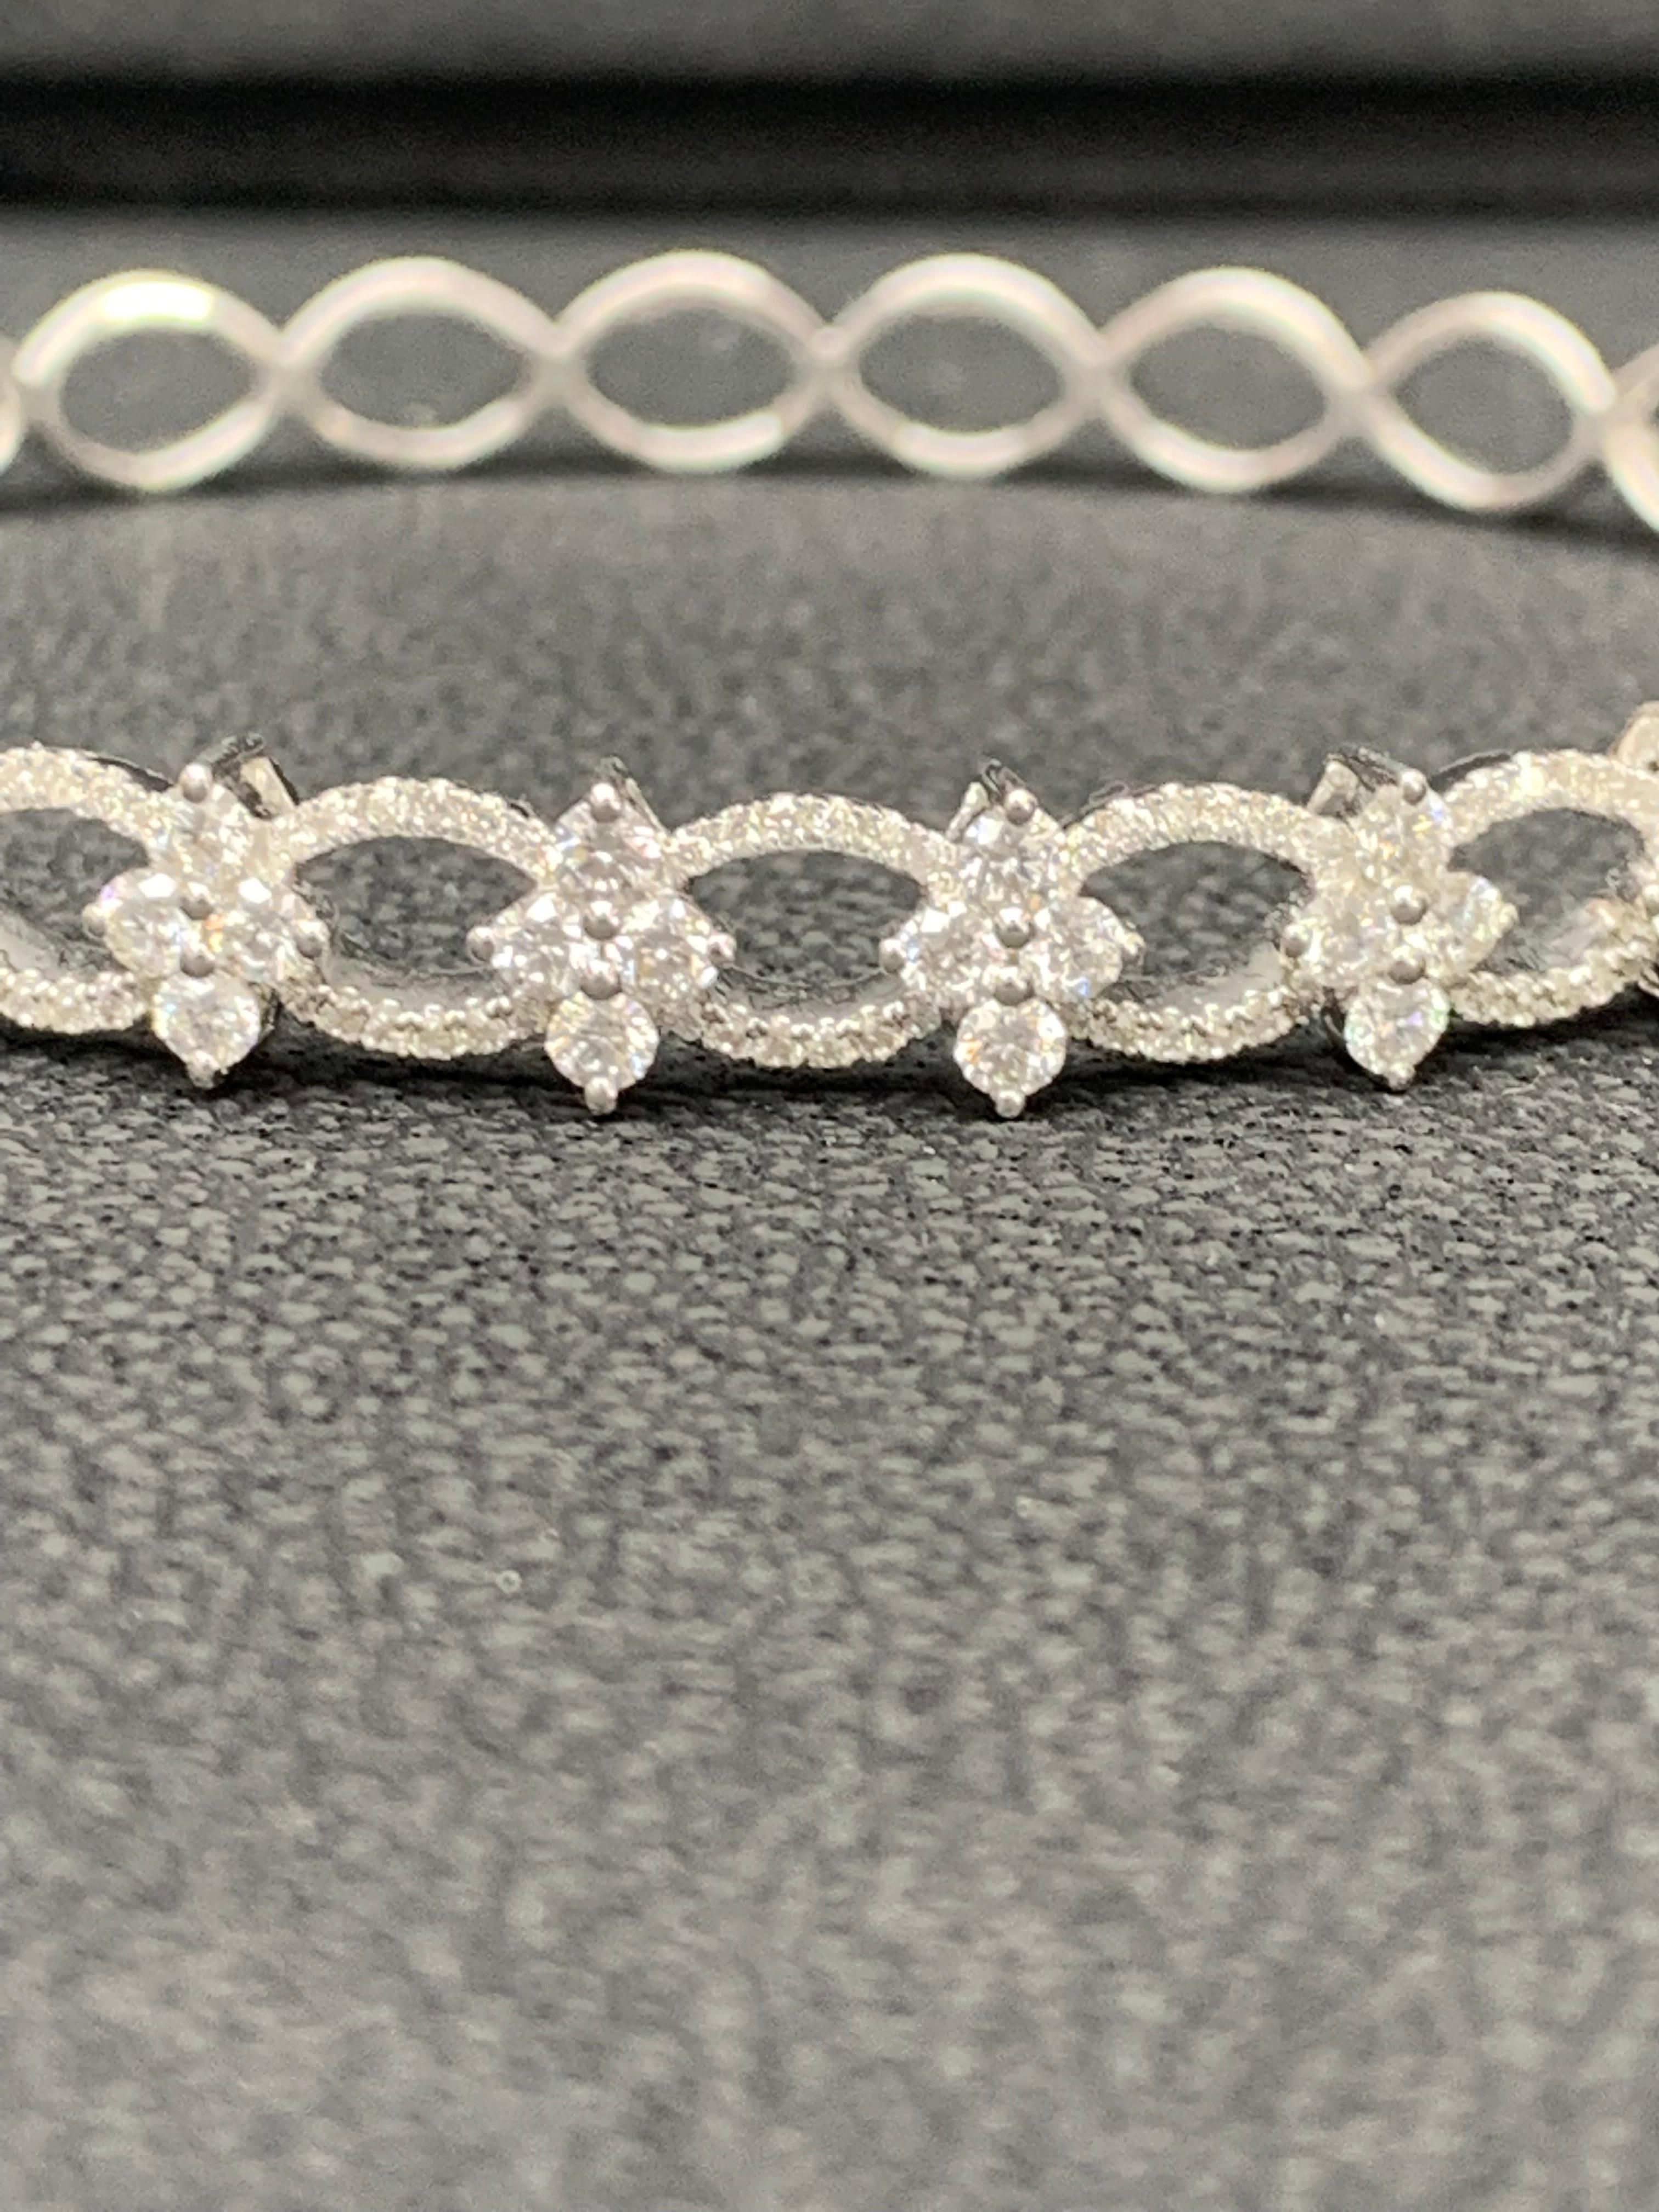 Ce magnifique et important bracelet met en valeur 2,00 carats de diamants ronds brillants, grands et petits, sertis dans une monture ajourée au design complexe en or blanc 18 carats.

Style disponible dans différentes gammes de prix. Les prix sont